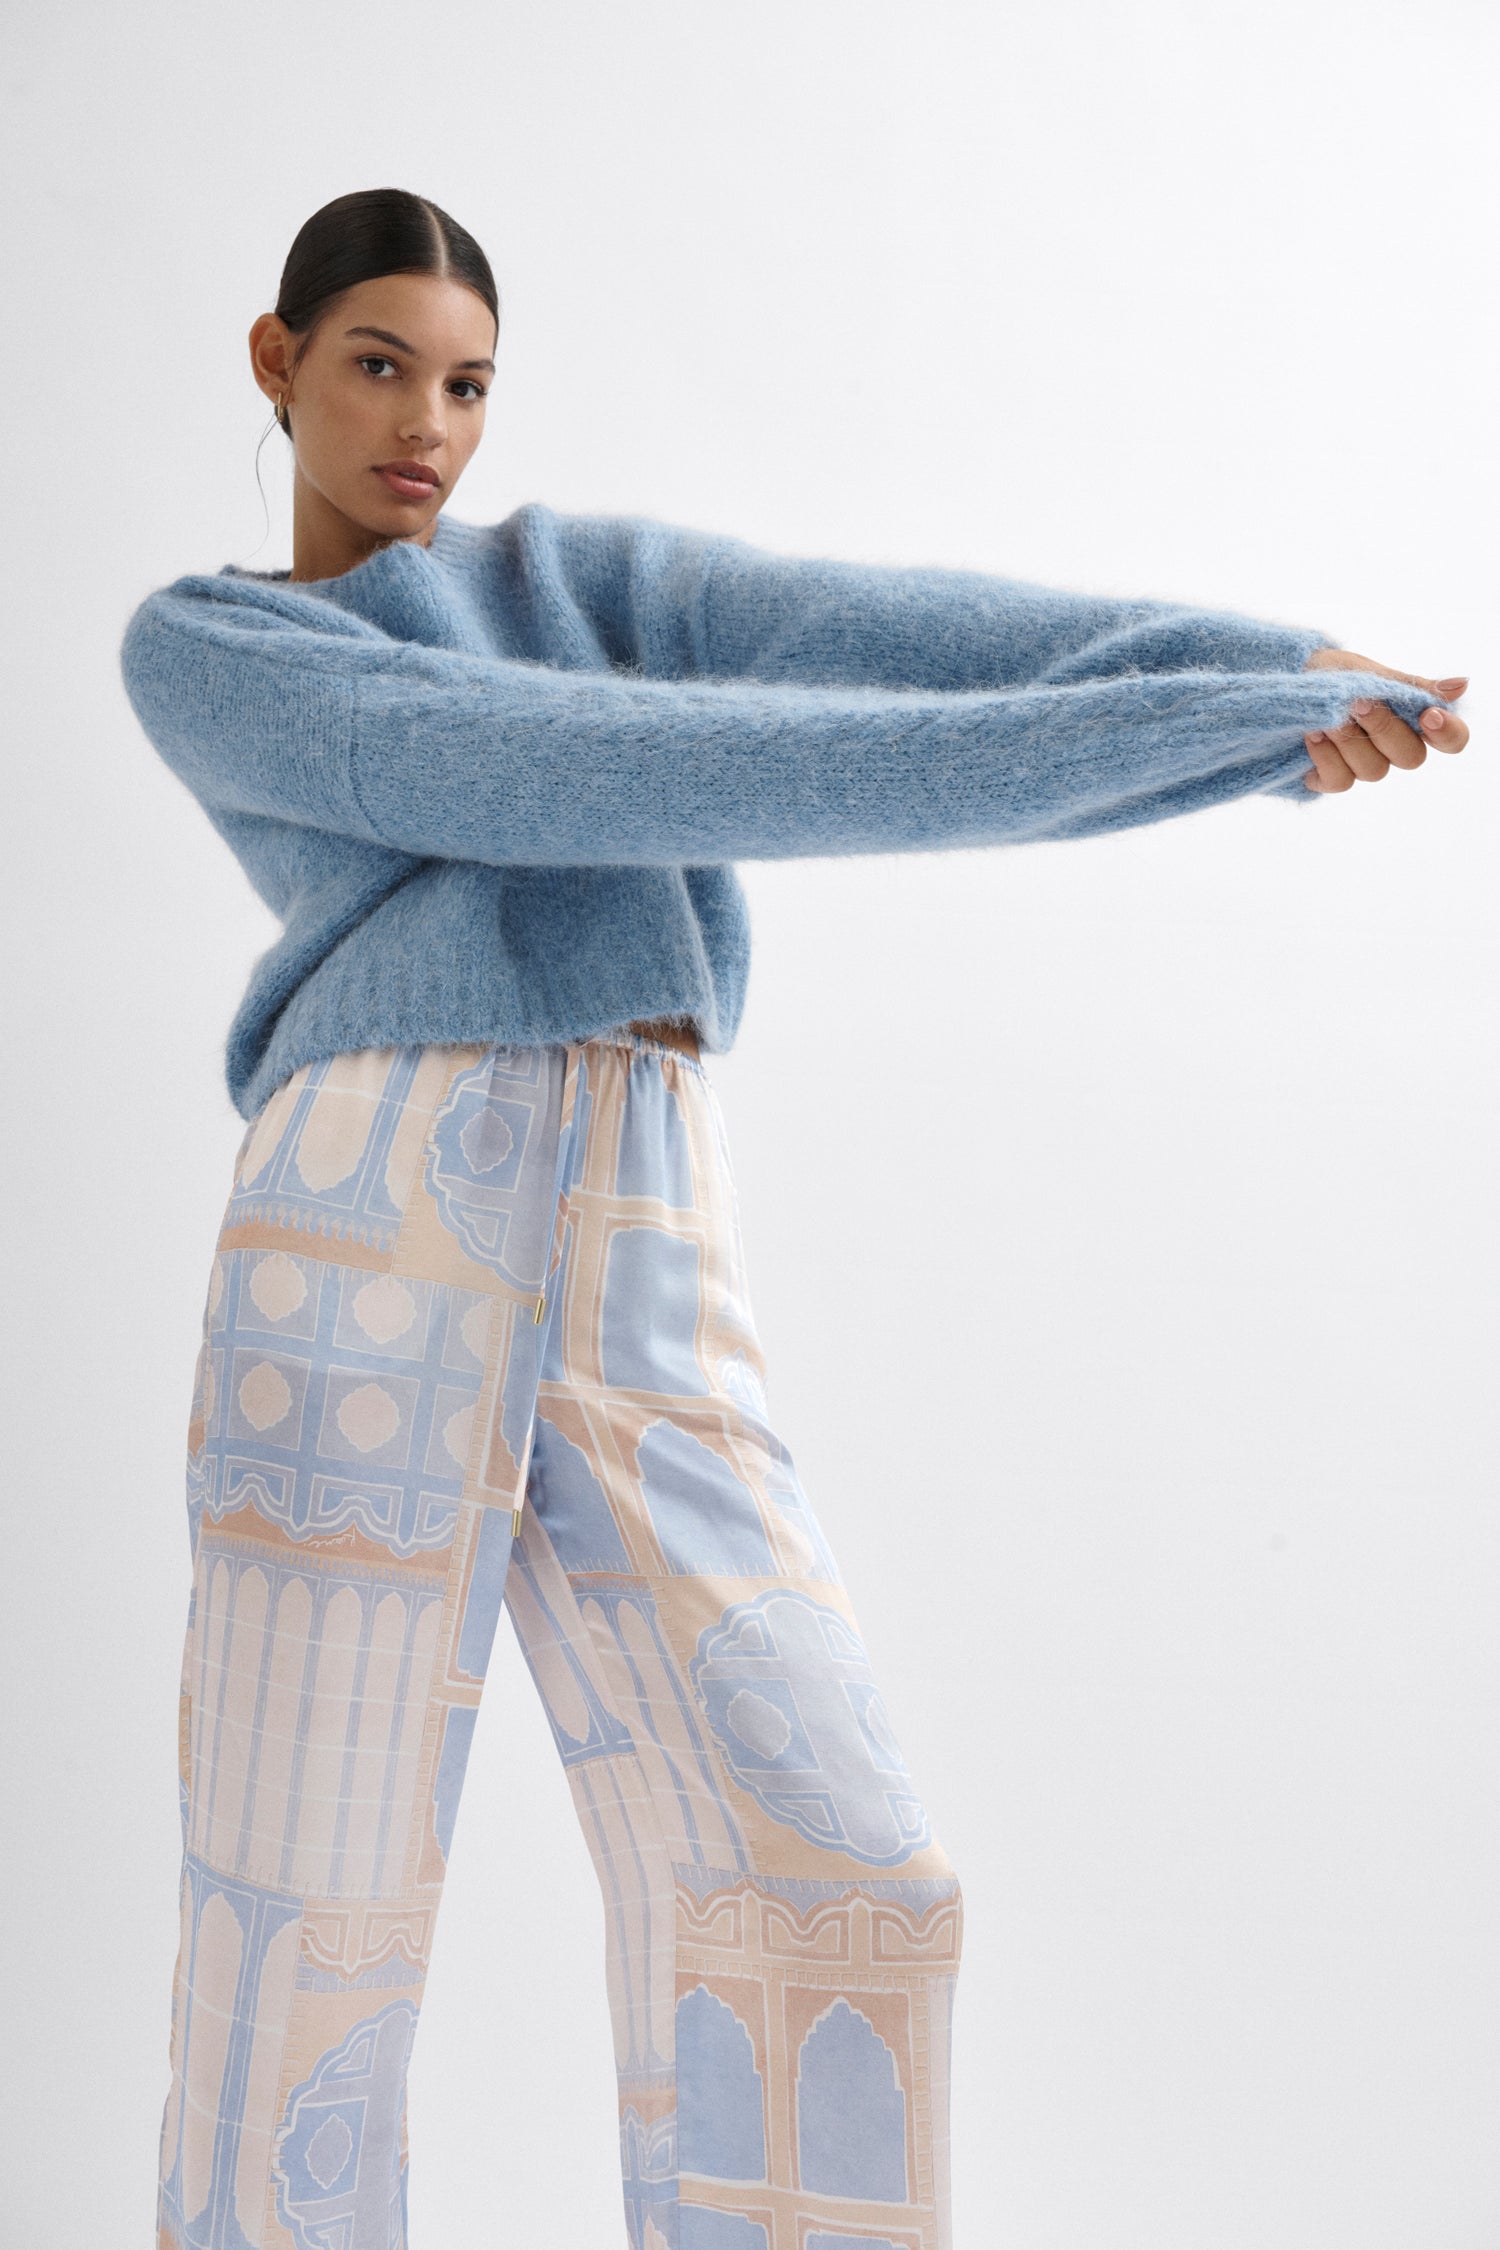 Marina Knit Sweater - Sky